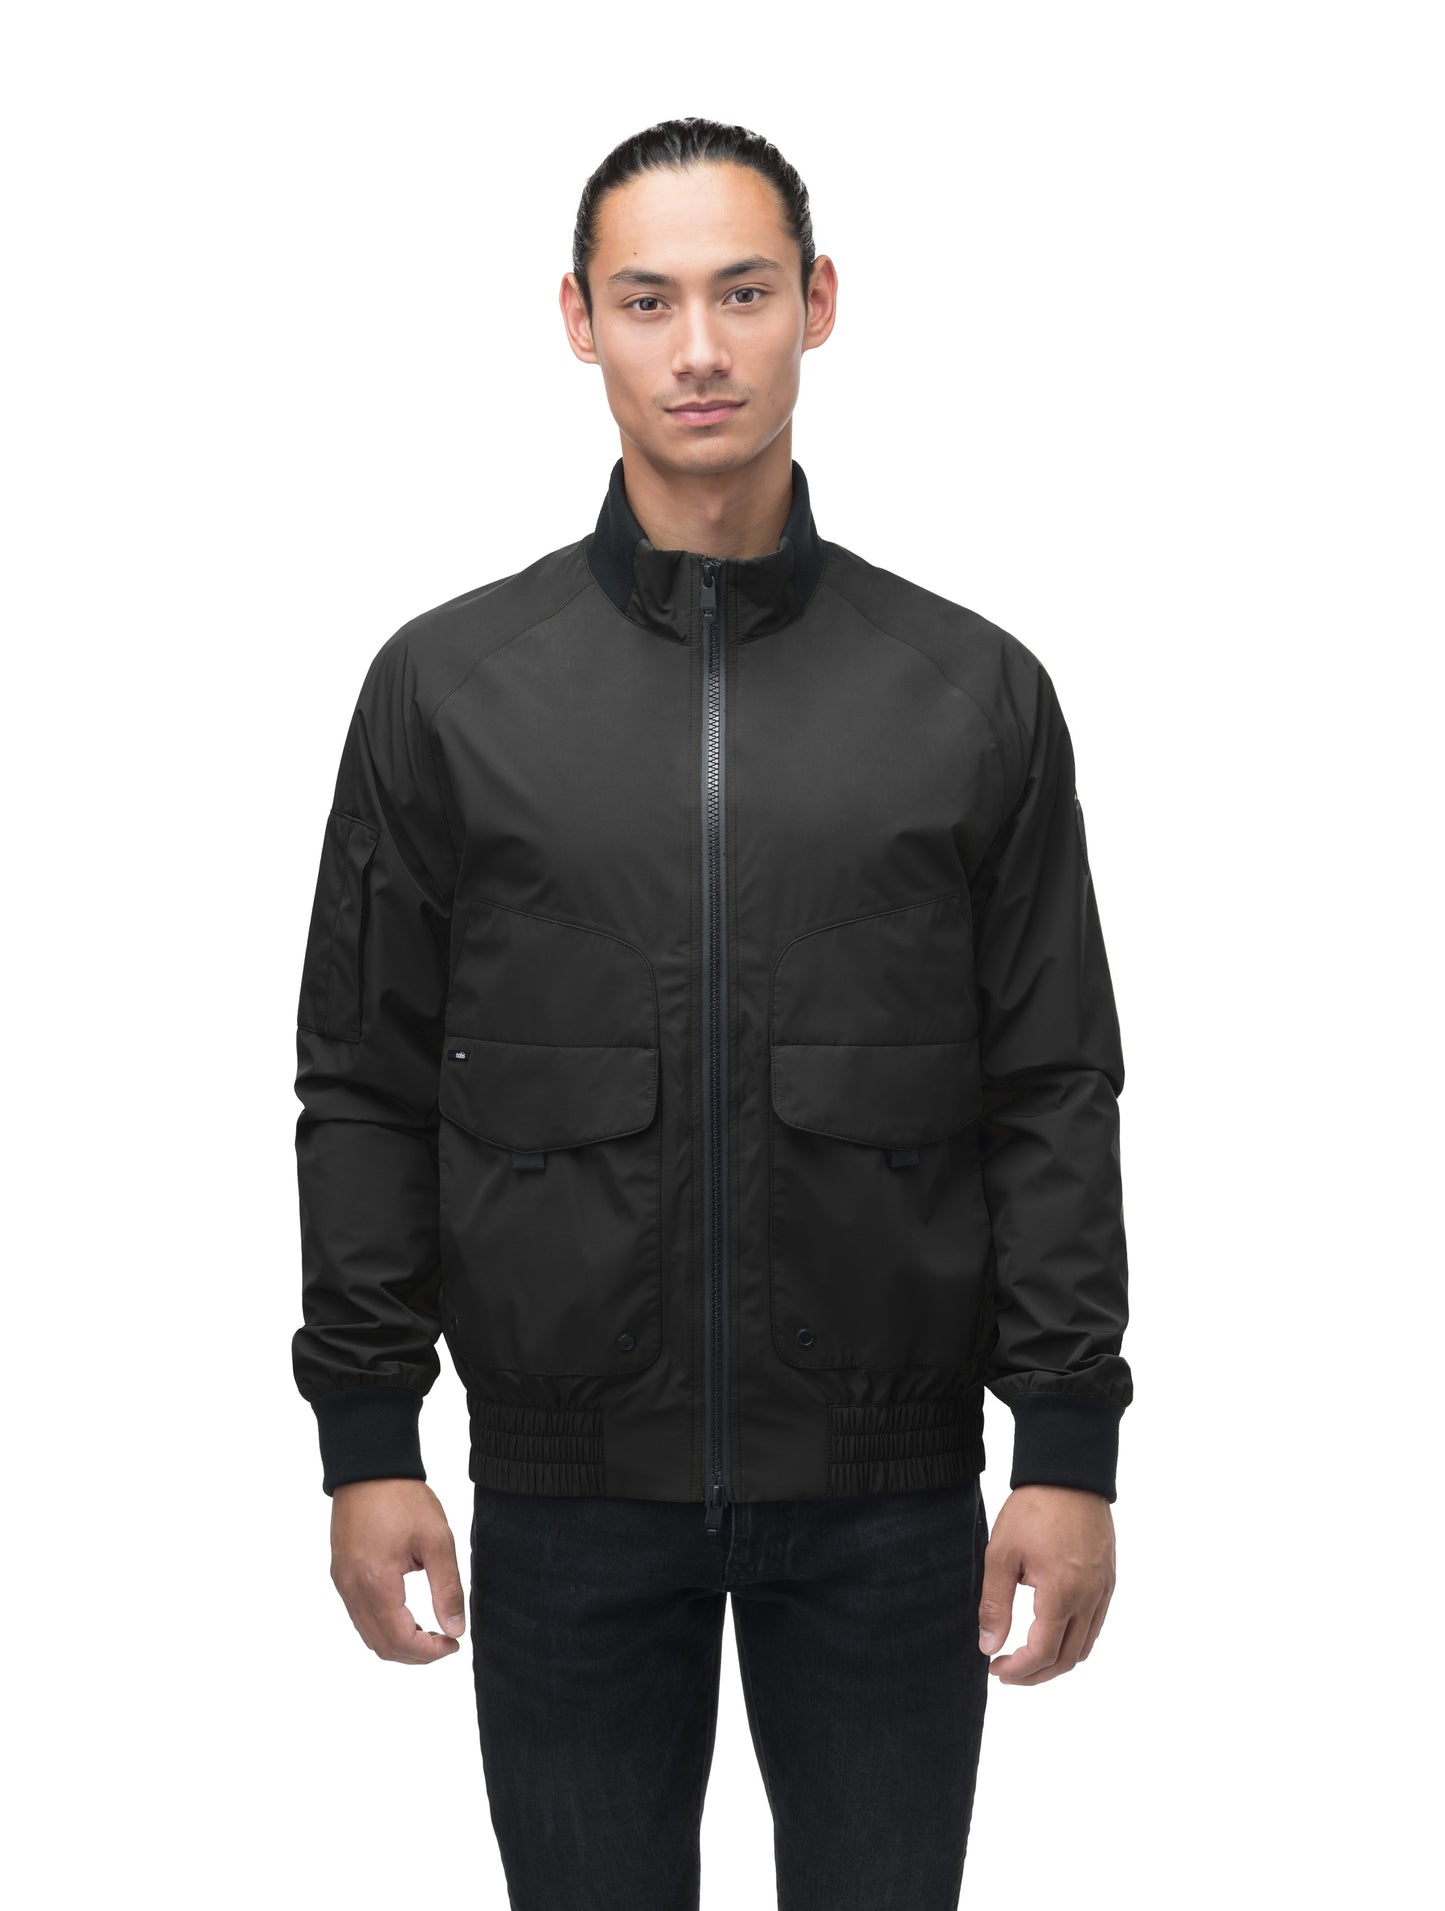 Men's hip length waterproof bomber jacket with 2-way zipper in Black